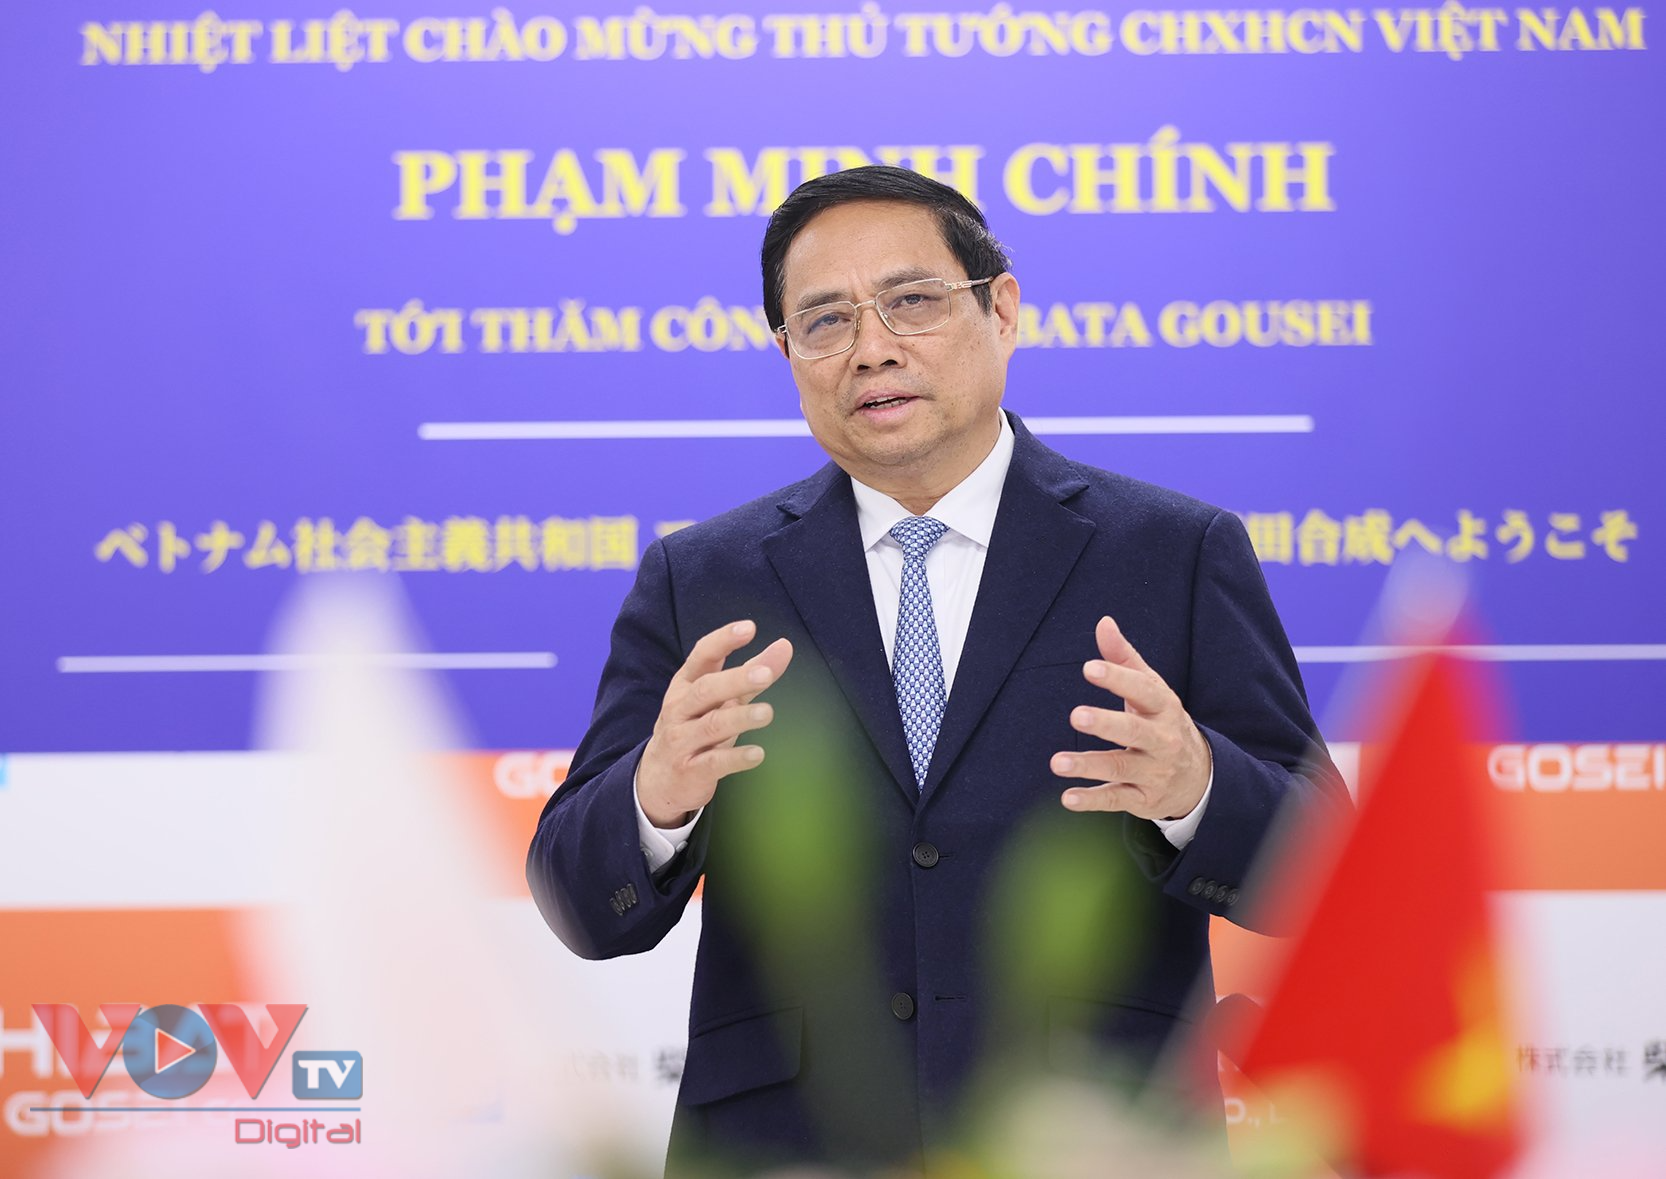 Thủ tướng Phạm Minh Chính thăm Công ty Shibata Gousei tại tỉnh Gunma- Ảnh 3.